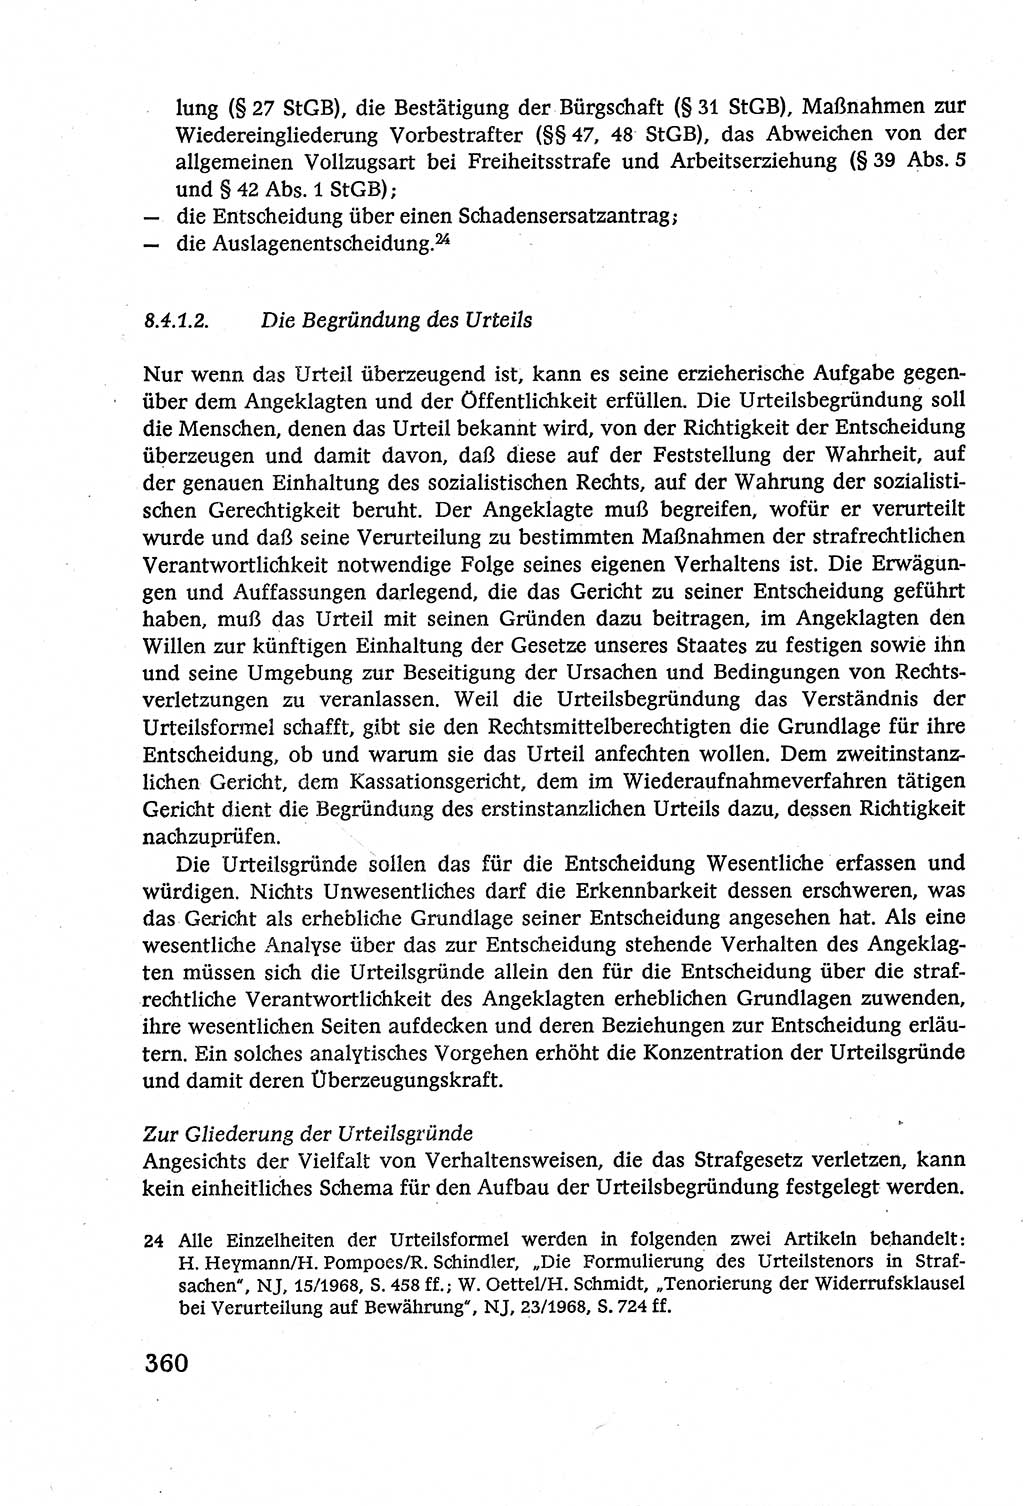 Strafverfahrensrecht [Deutsche Demokratische Republik (DDR)], Lehrbuch 1977, Seite 360 (Strafverf.-R. DDR Lb. 1977, S. 360)